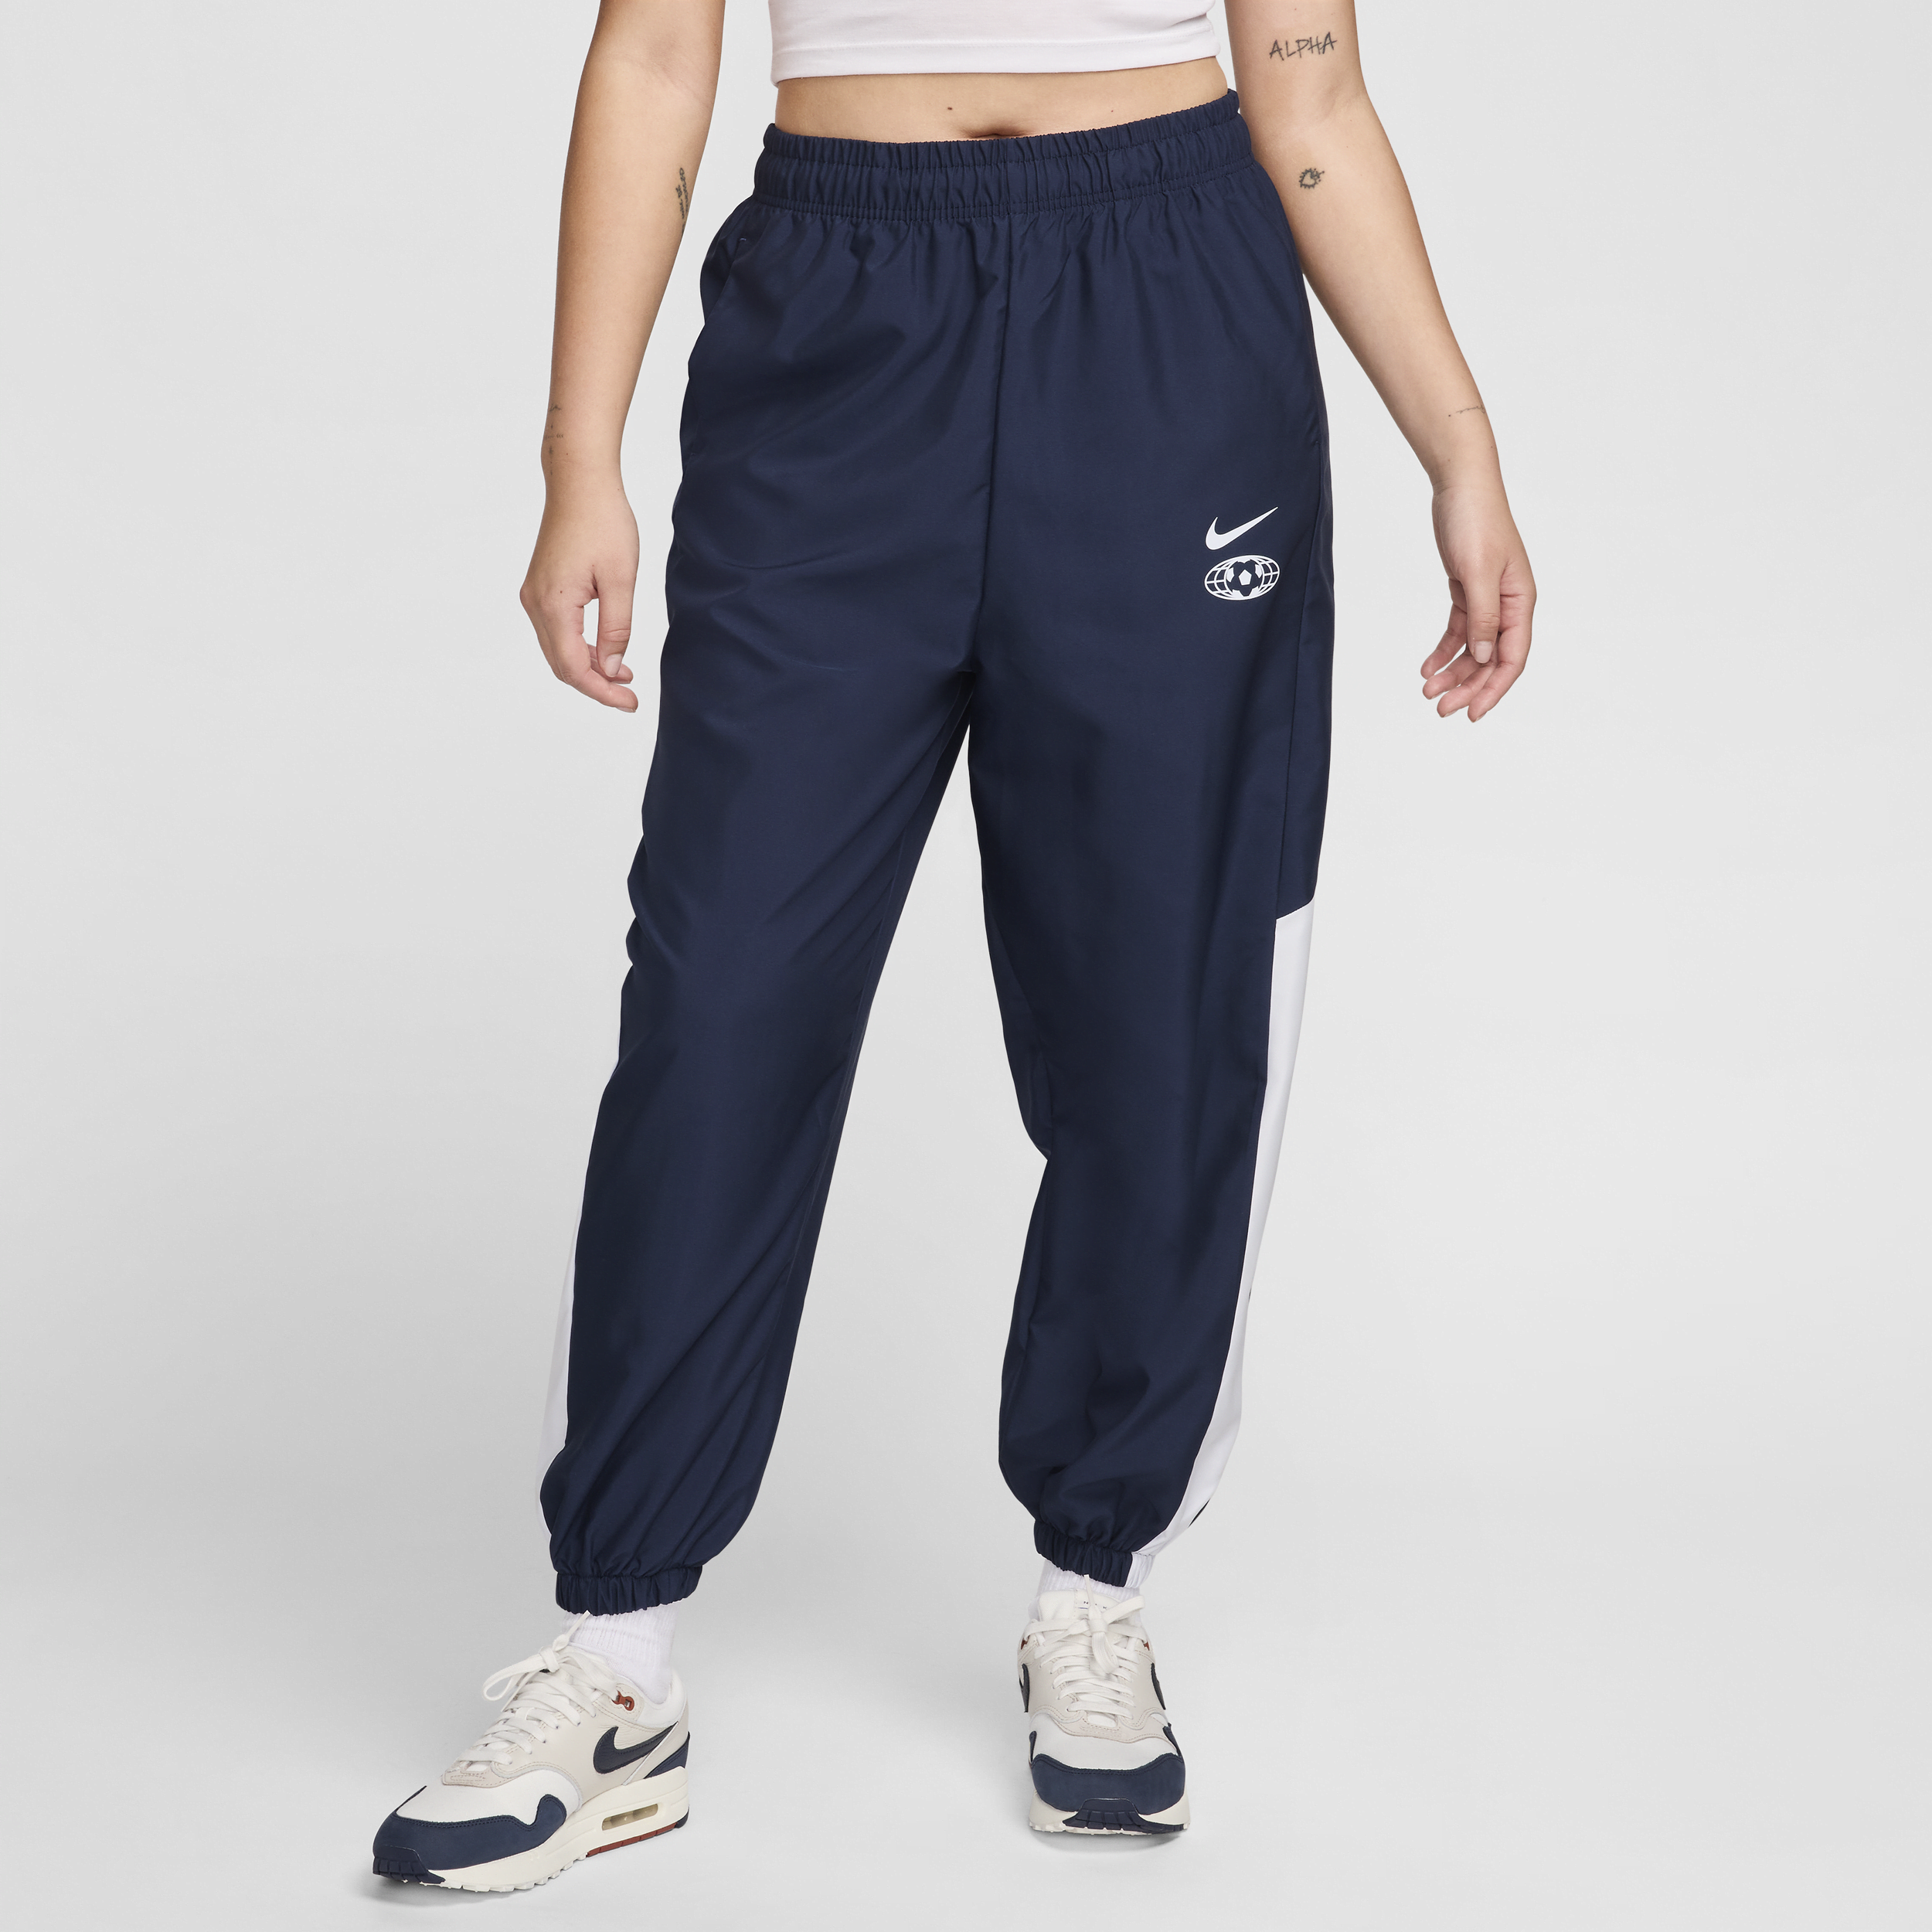 Nike Sportswear geweven joggingbroek voor dames - Blauw